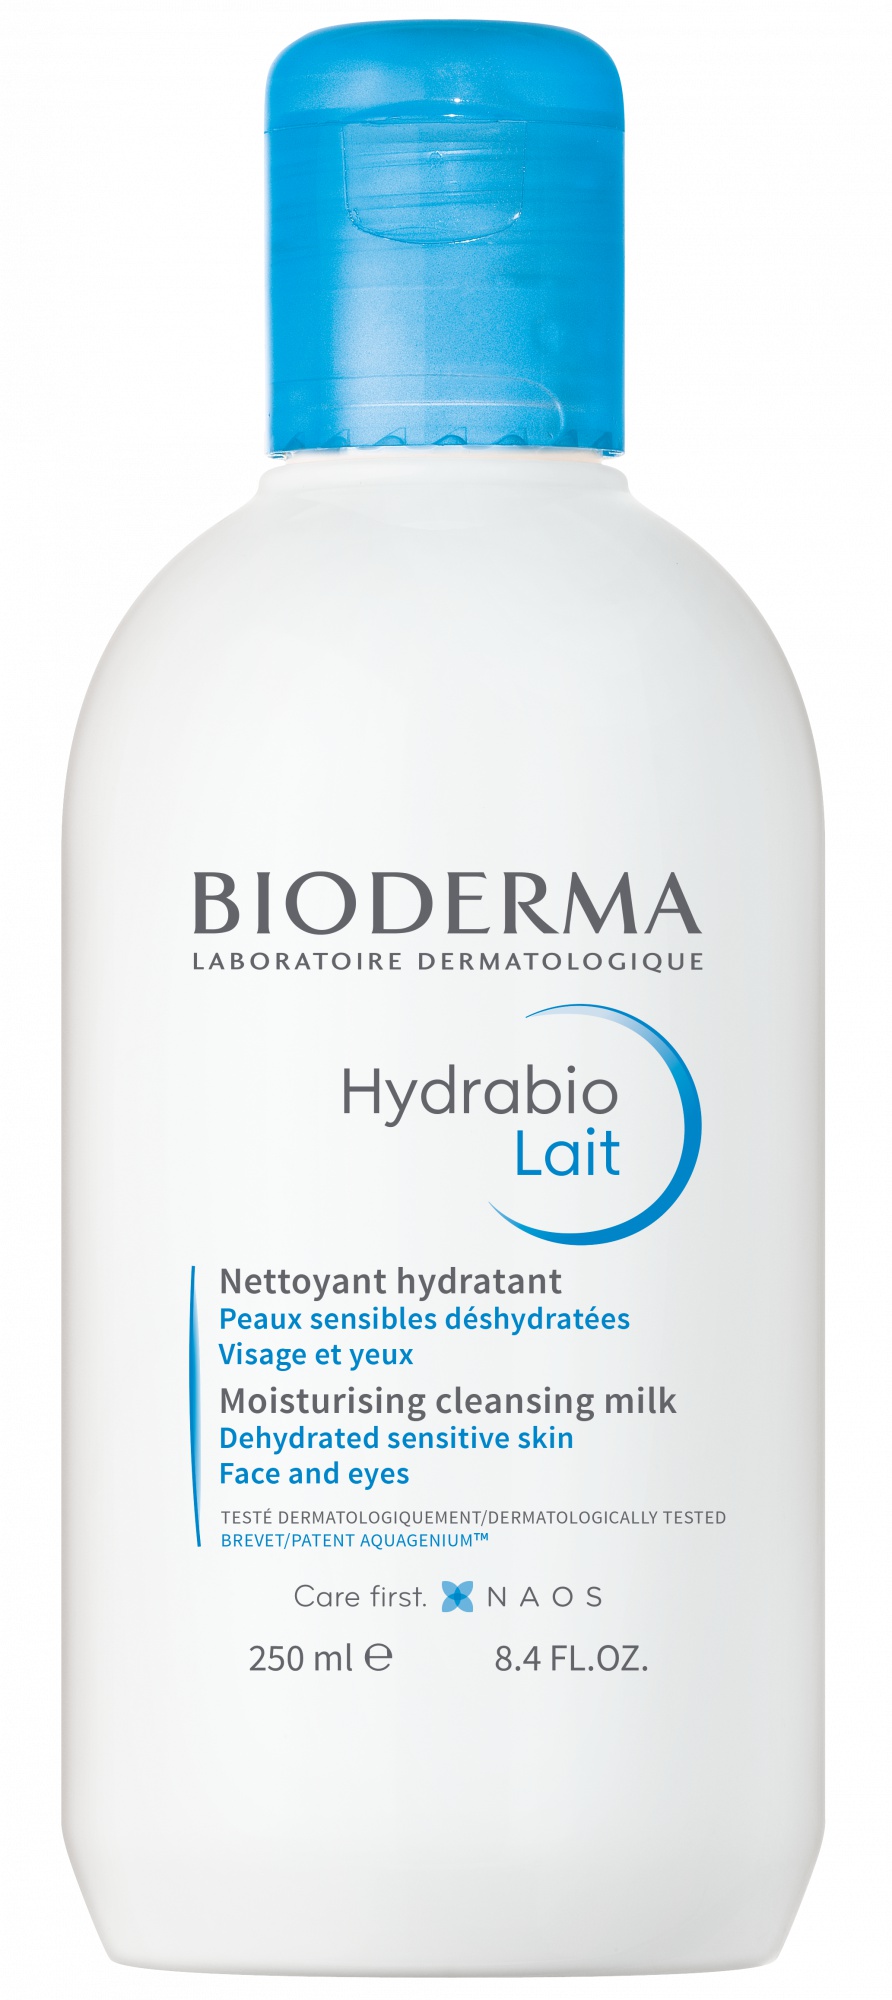 Bioderma Hydrabio Lait Moisturising Cleansing Milk